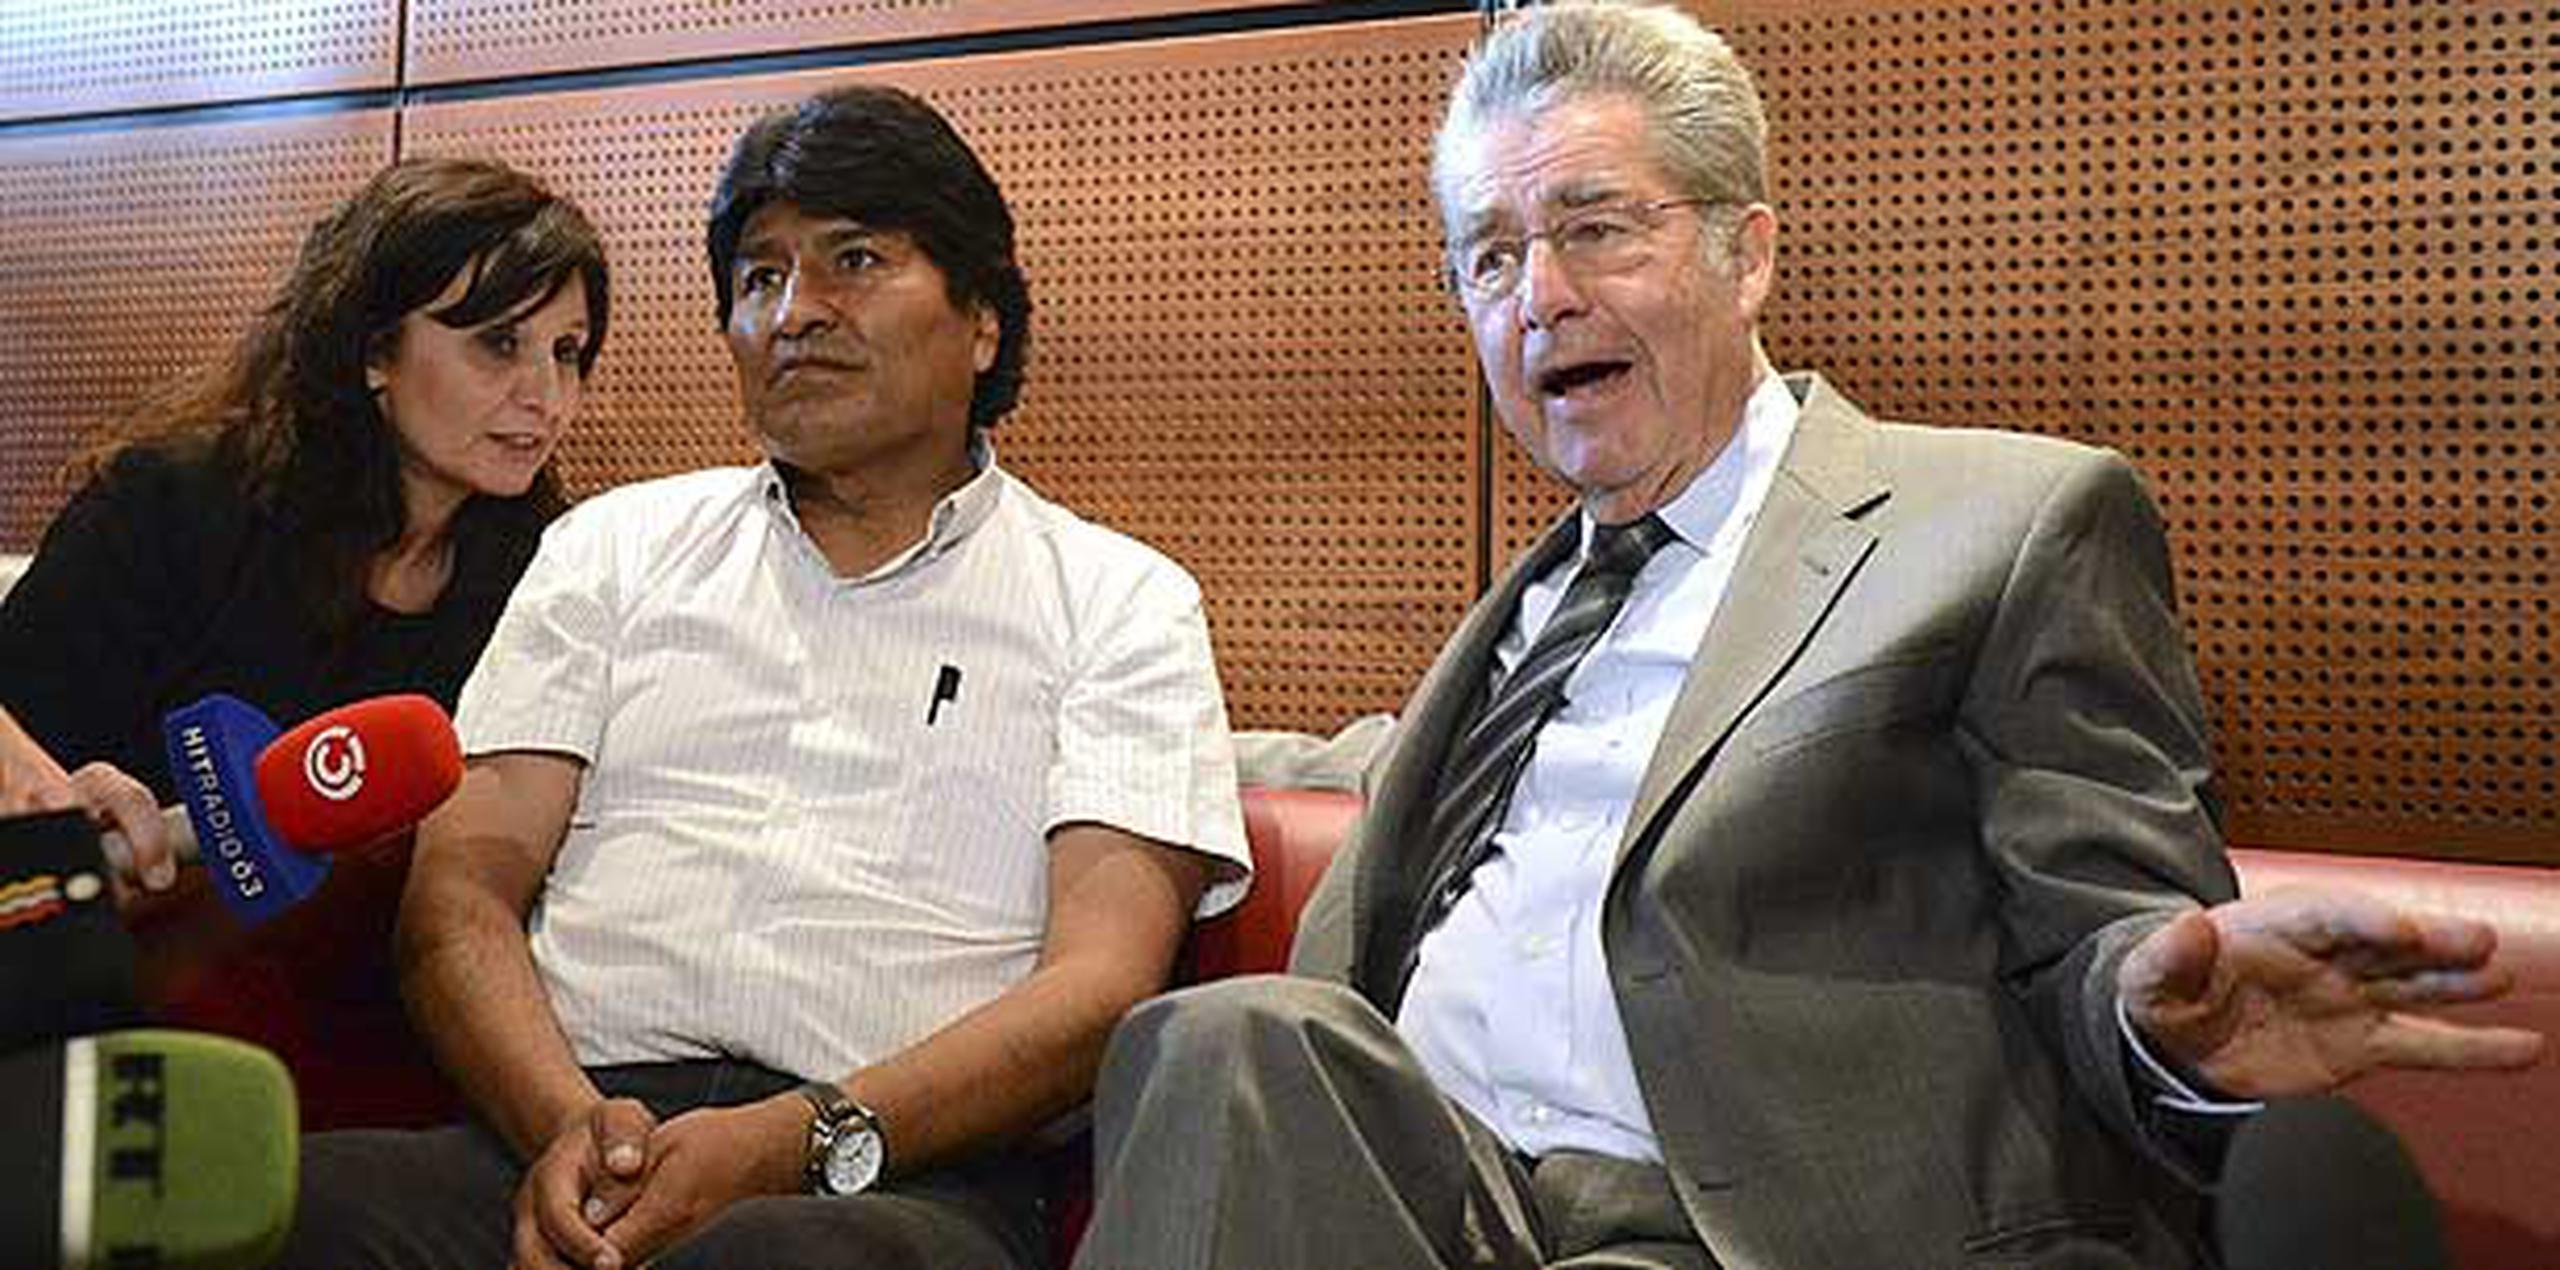 El presidente austriaco, Heinz Fischer, junto Evo Morales antes de que el mandatario latinoamericano pudiera emprender su viaje de regreso a Bolivia.   (EFE/Helmut Fohringer)